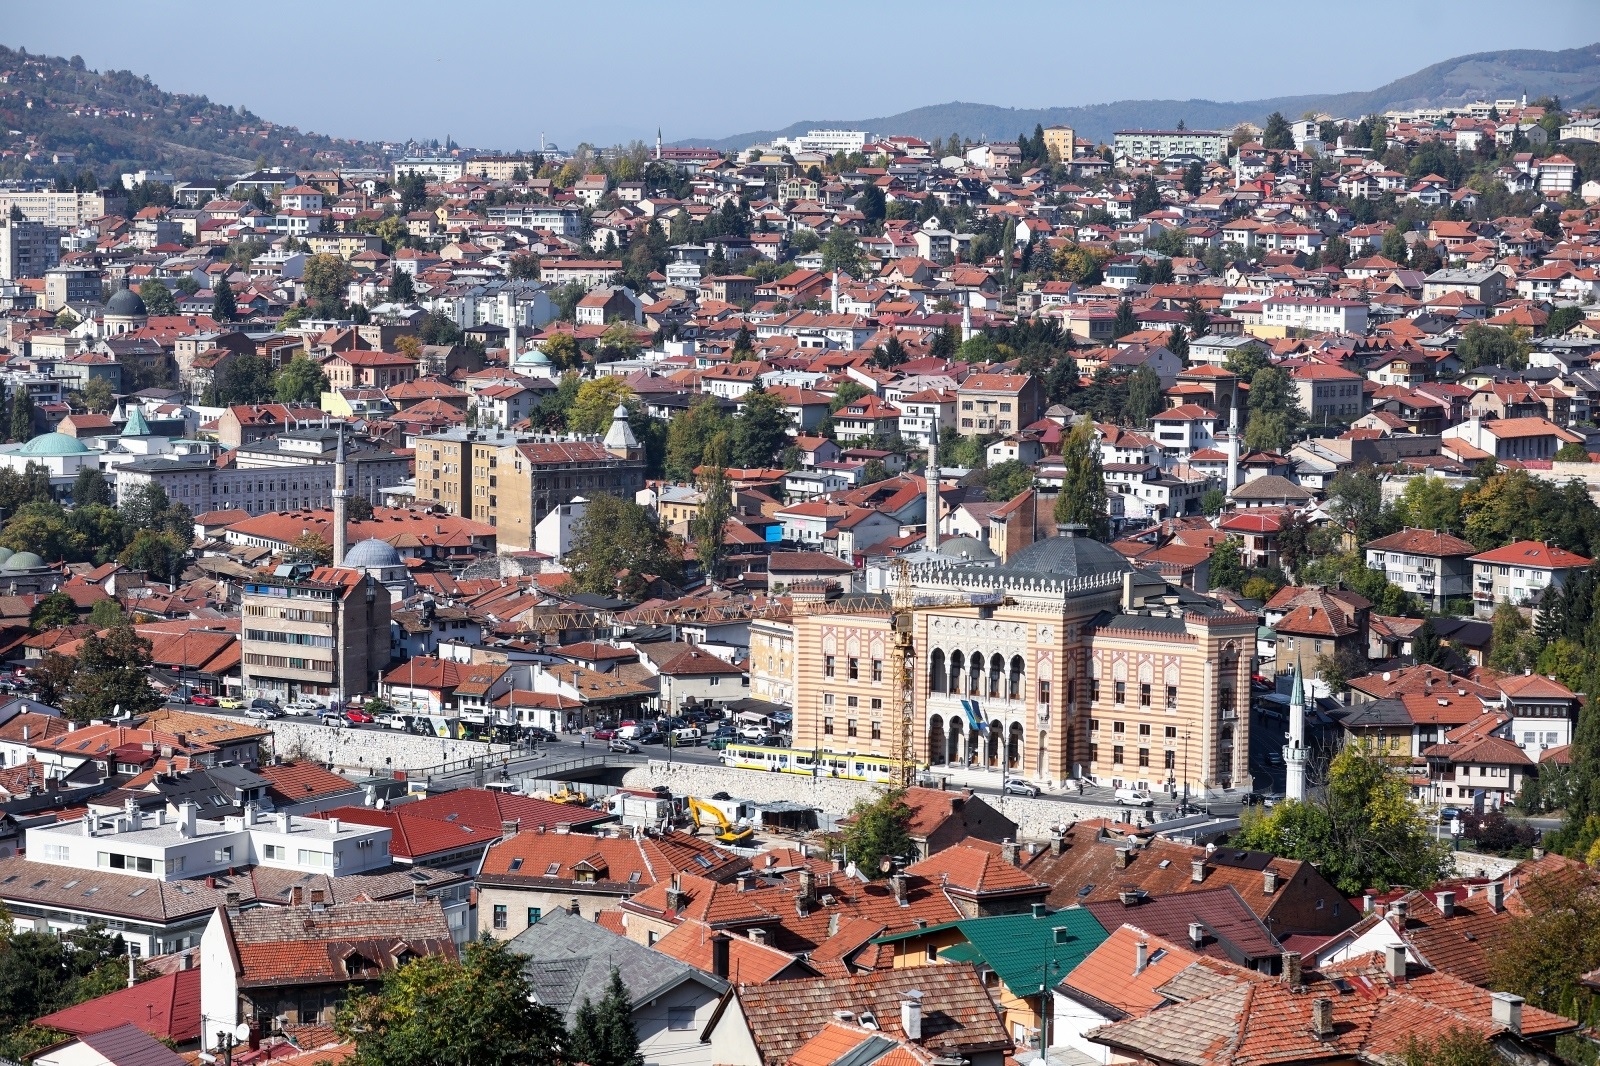 18.10.2019., Sarajevo, Bosna i Hercegovina - Panorama grada Sarajeva. Photo: Armin Durgut/PIXSELL